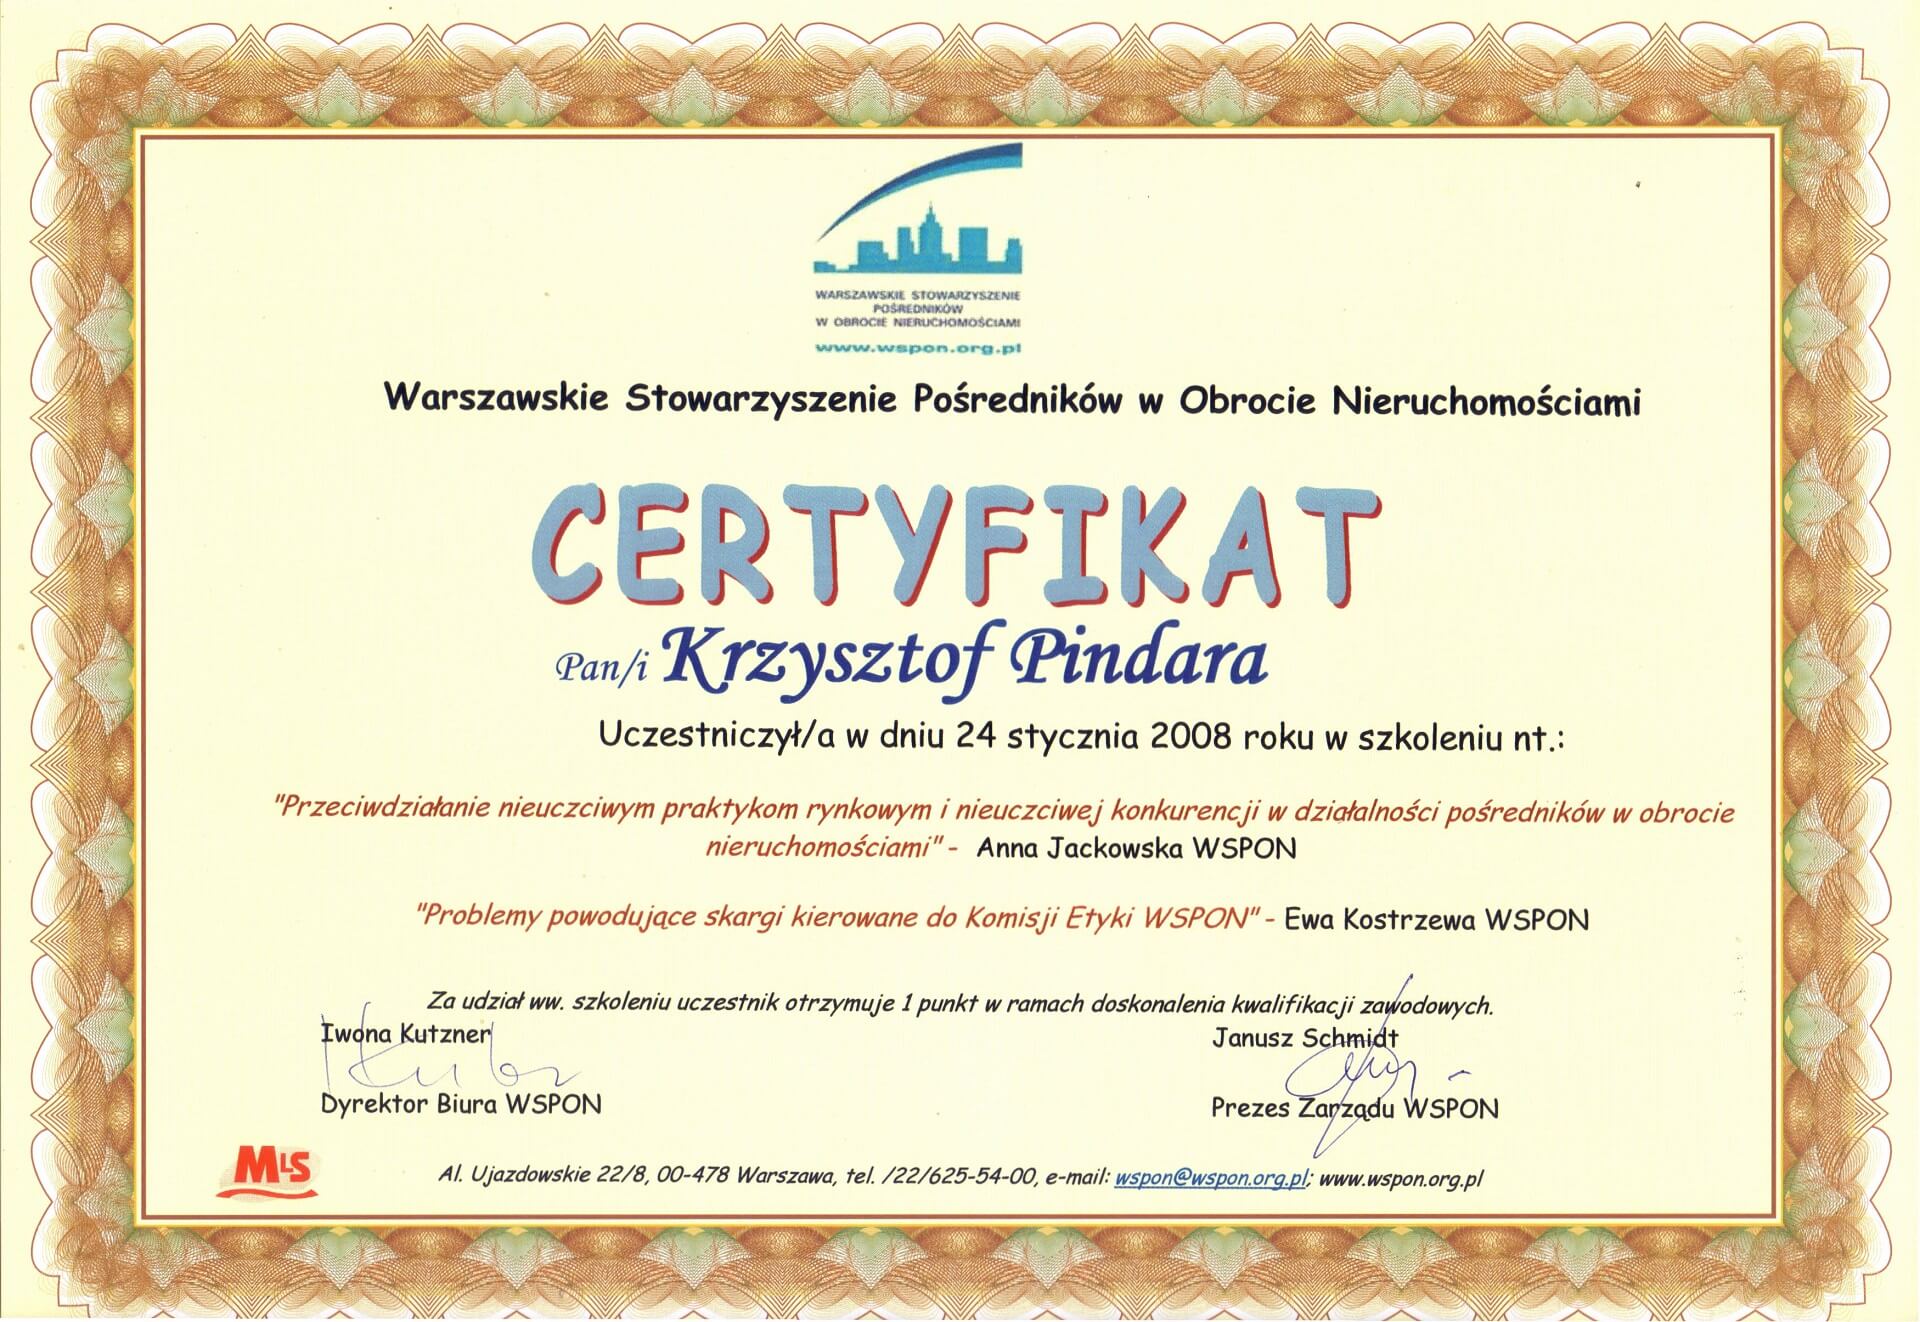 Certyfikat_Krzysztof Pindara Brzeziński (6)